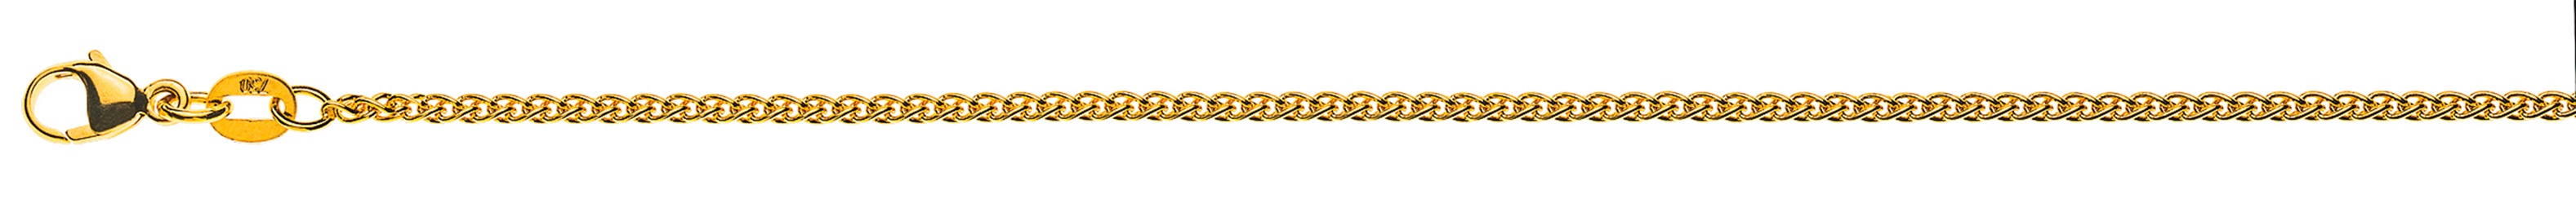 AURONOS Élégance Necklace yellow gold 14K cable chain 55cm 1.6mm